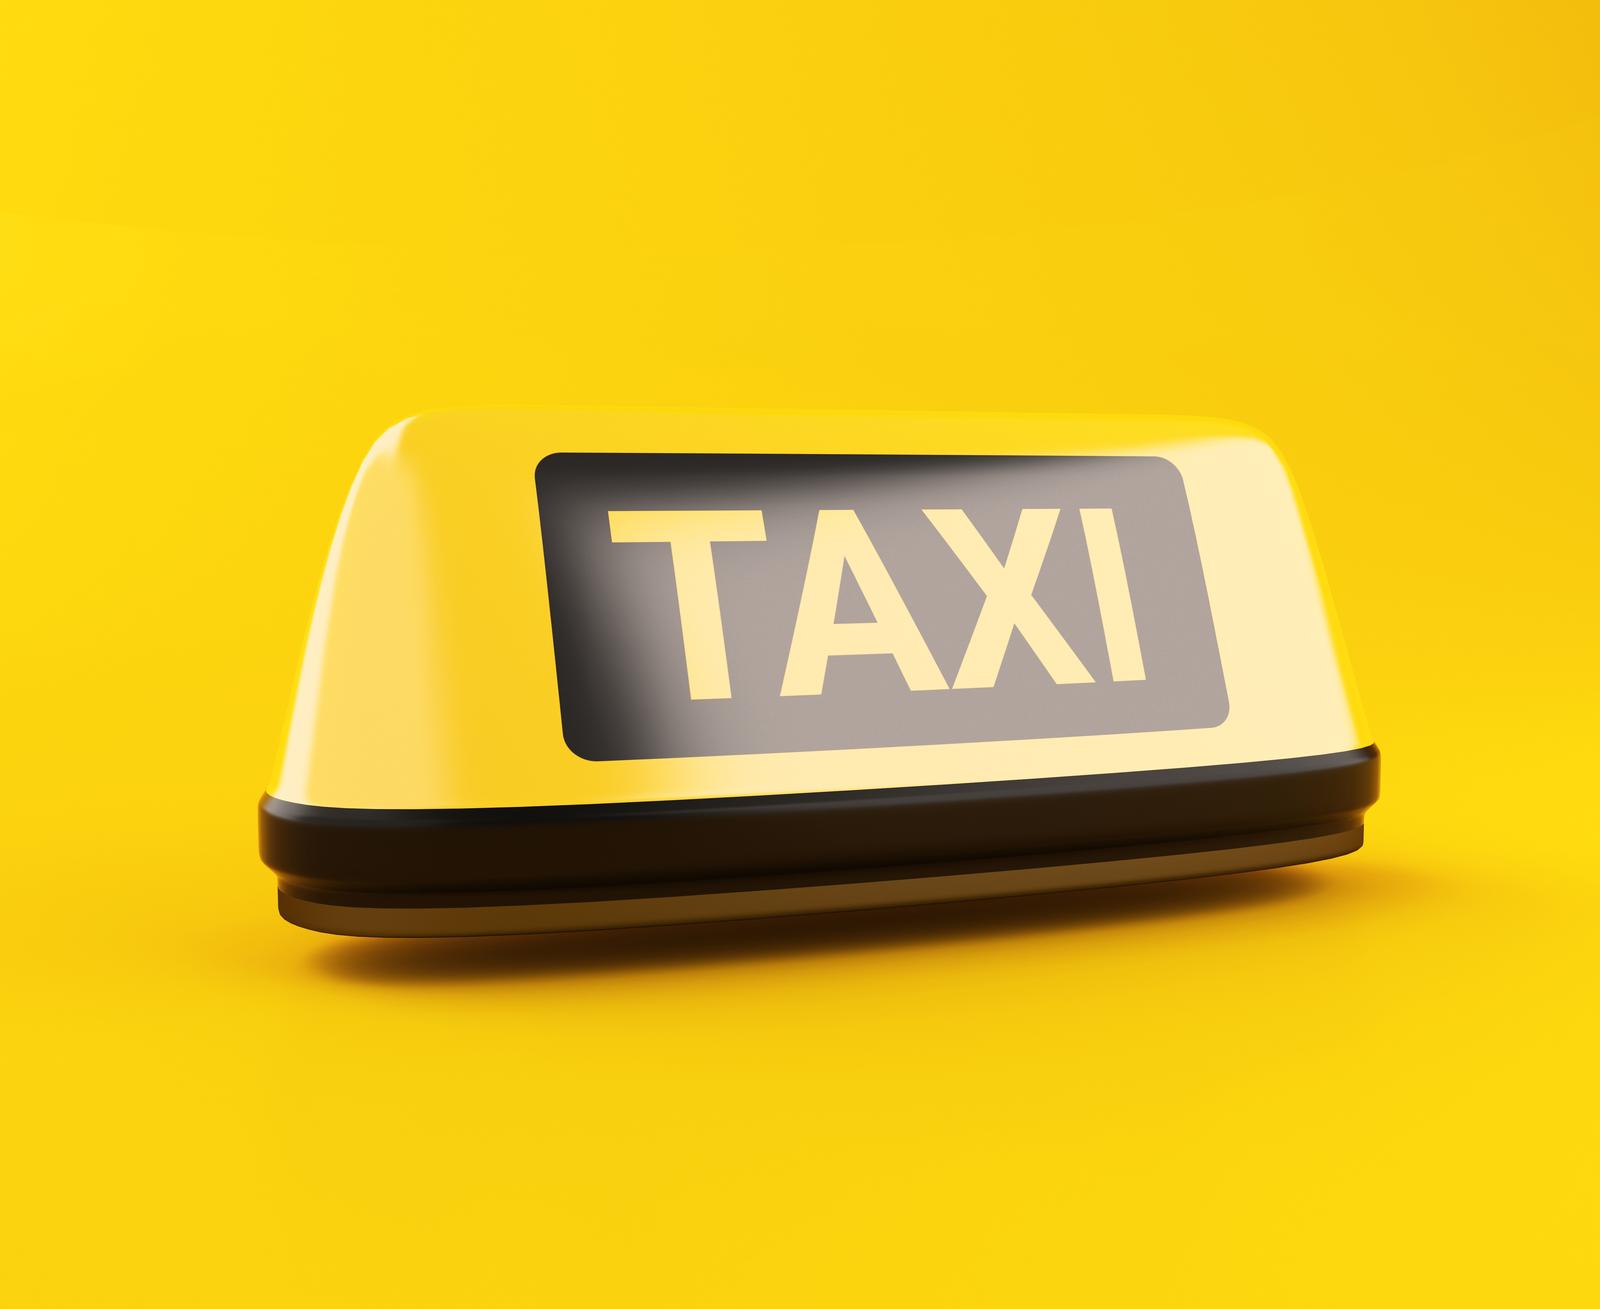 Taxi operation in Tallinn